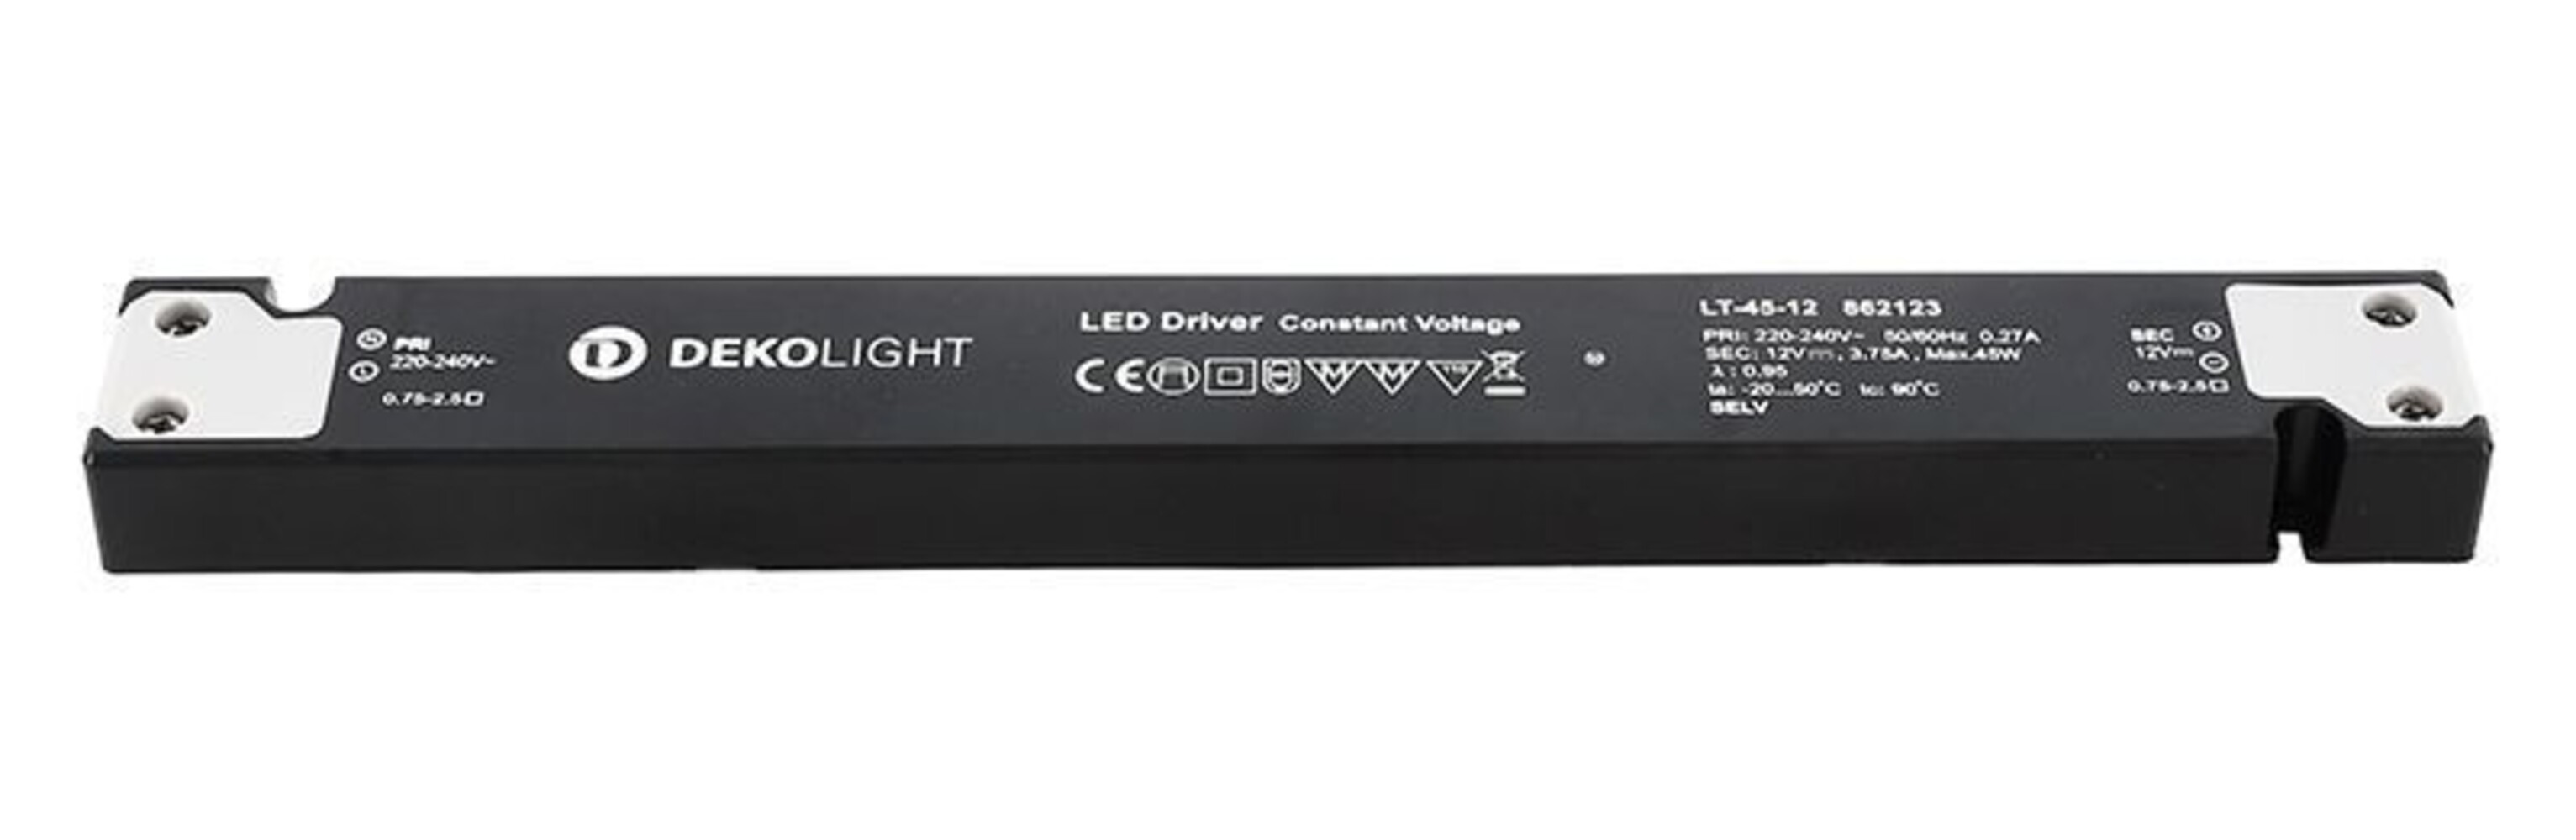 Hochwertiges LED-Netzteil der Marke Deko-Light, ideal für die Energieversorgung von LED-Leuchten